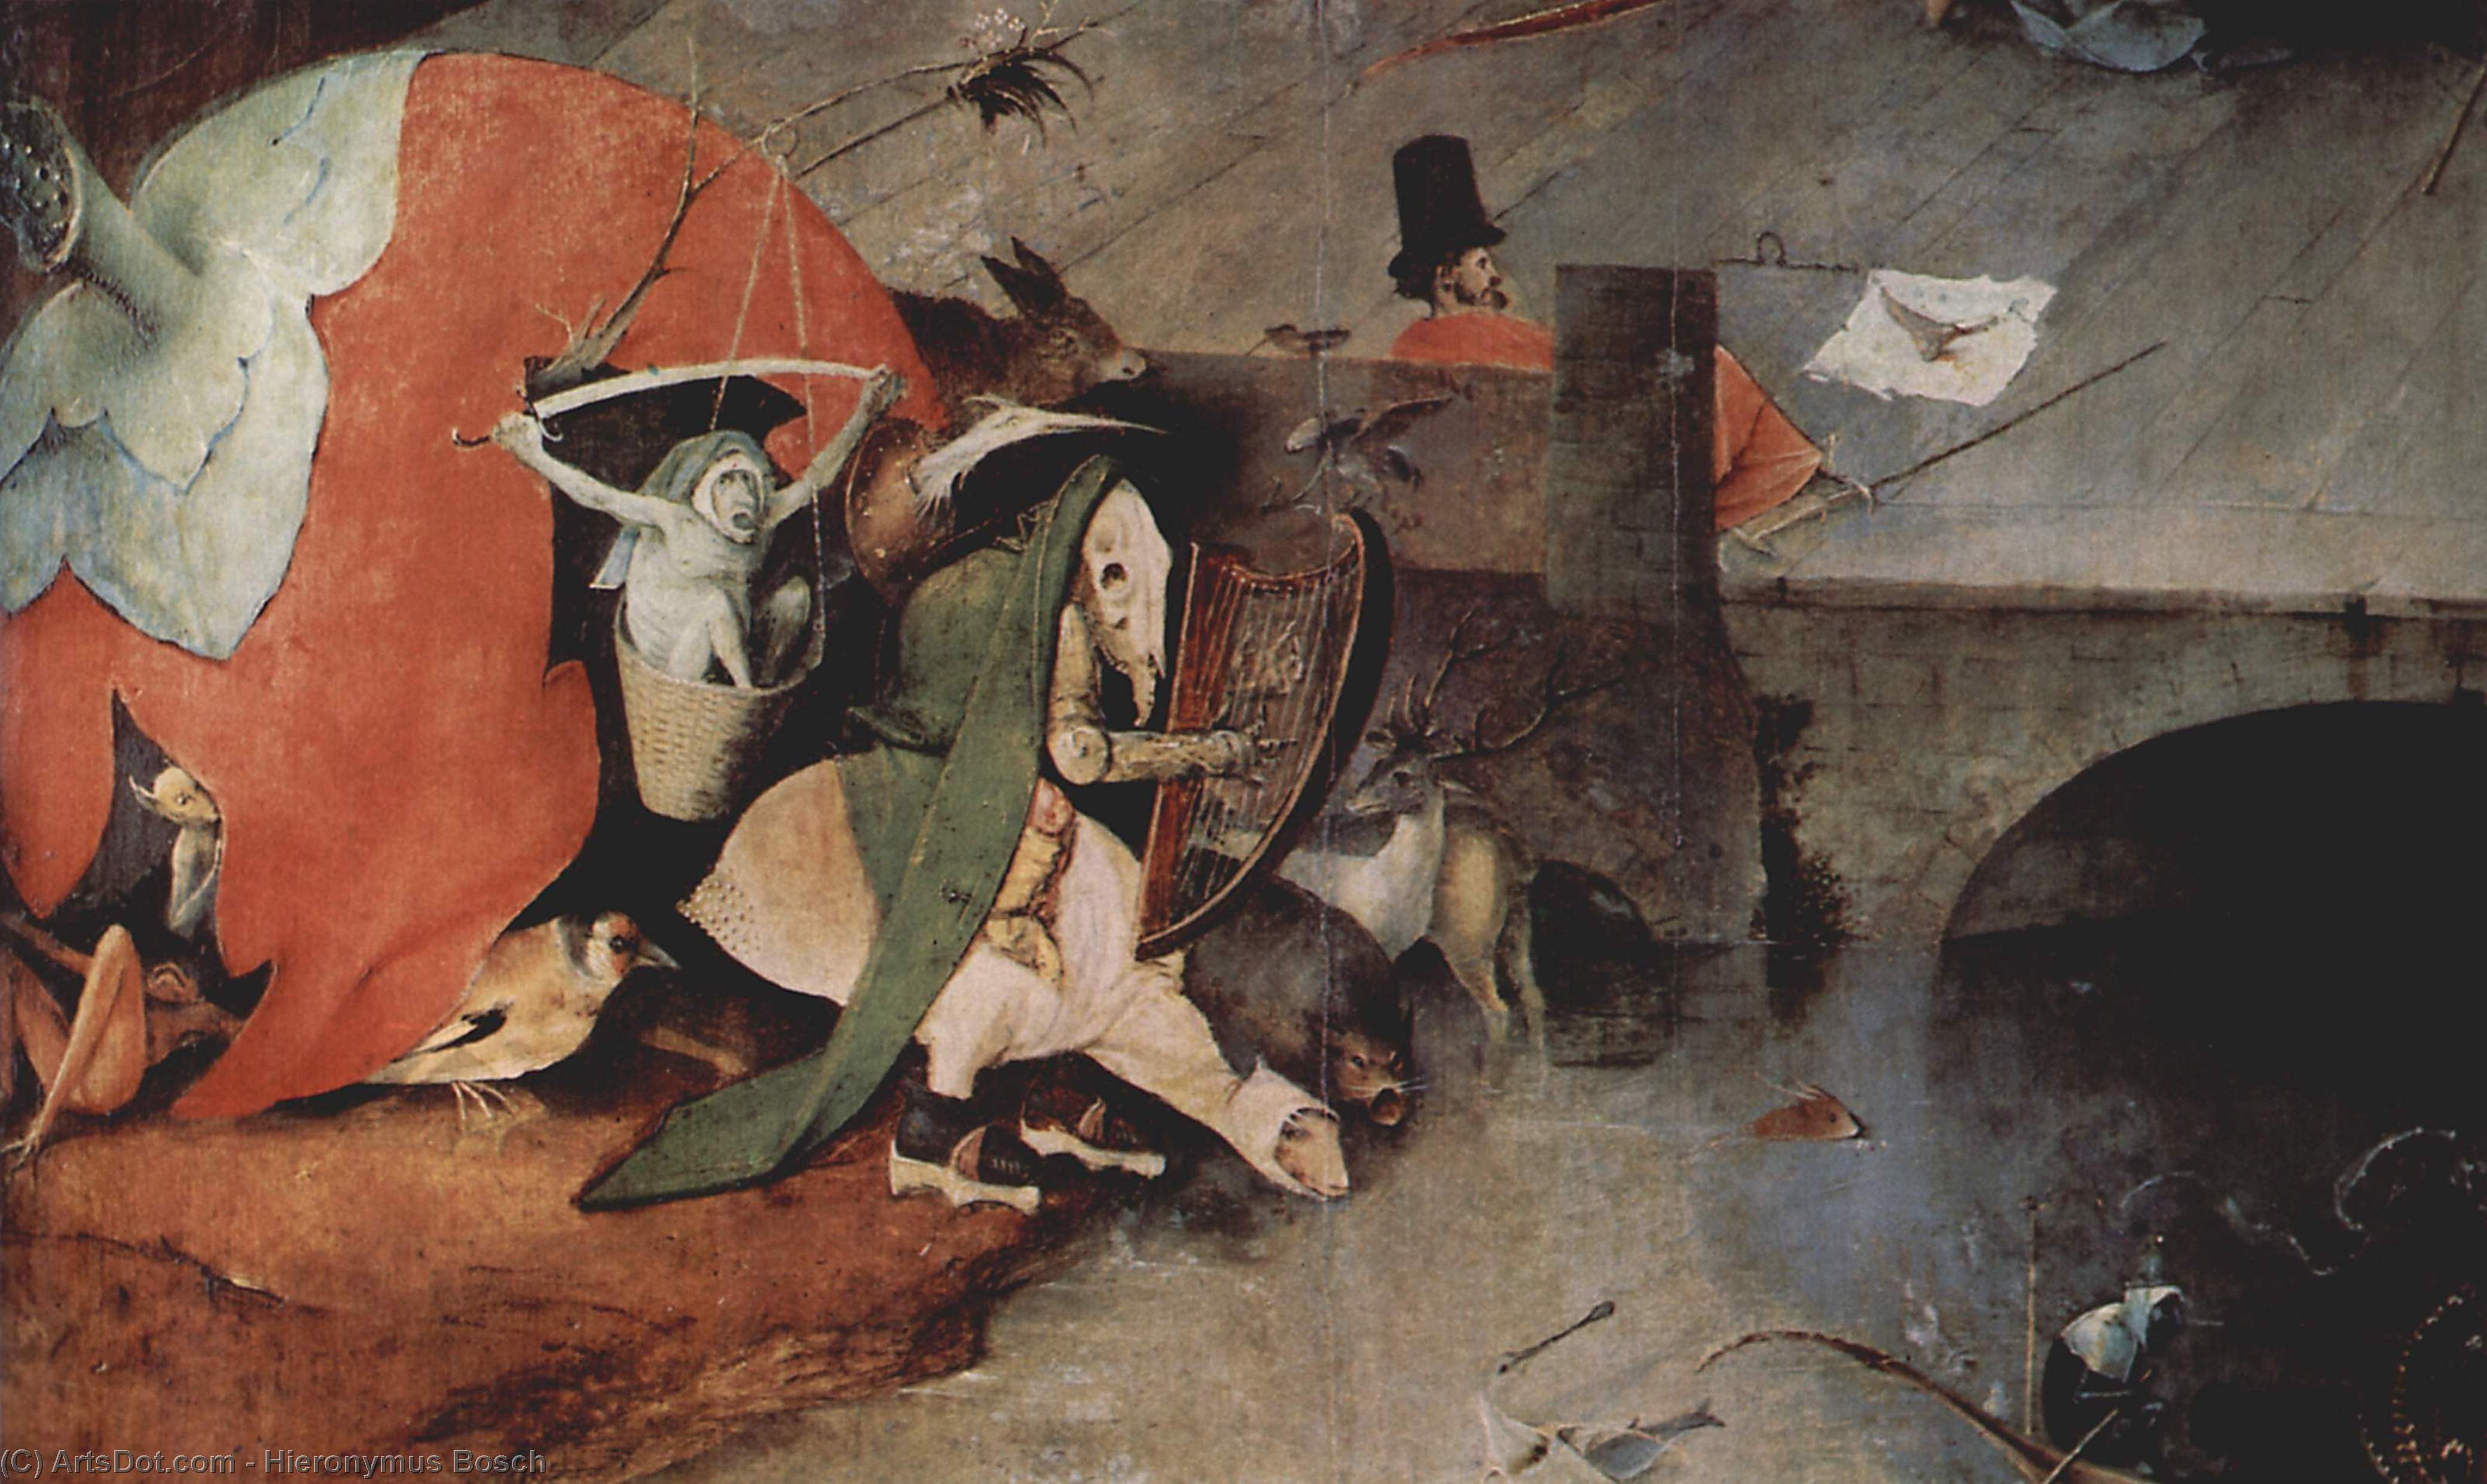 Wikioo.org - Bách khoa toàn thư về mỹ thuật - Vẽ tranh, Tác phẩm nghệ thuật Hieronymus Bosch - The Temptation of St. Anthony (detail)